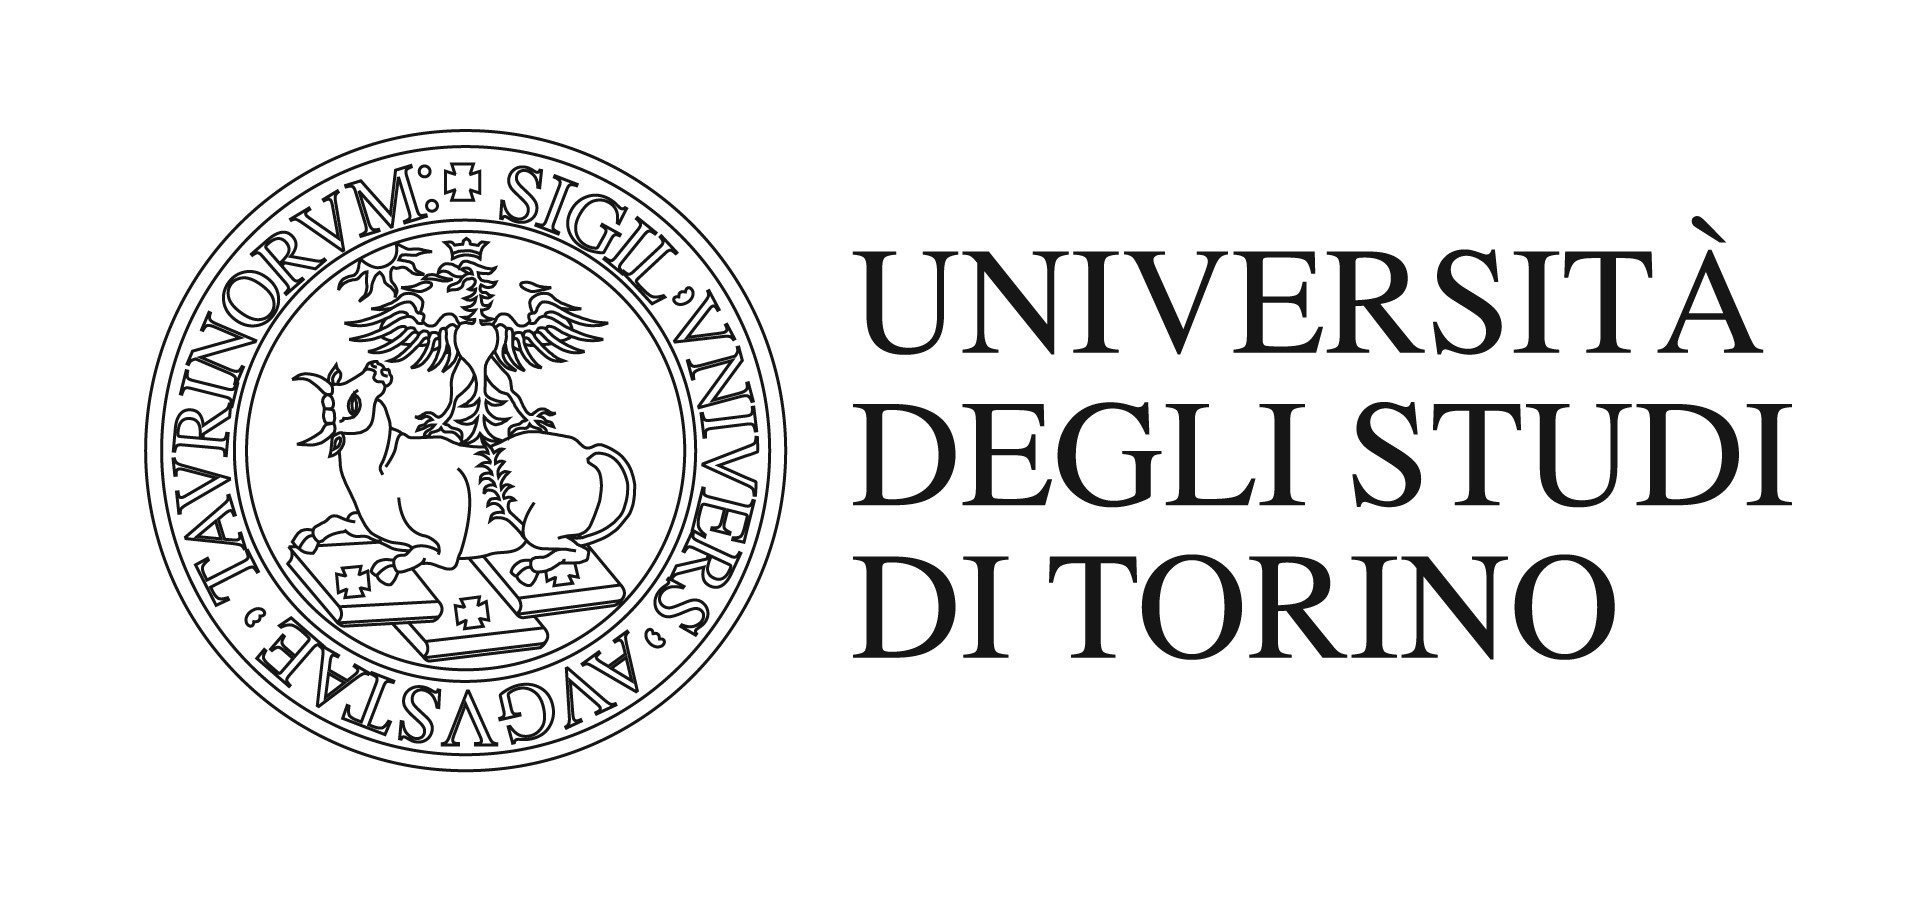 Université de Turin